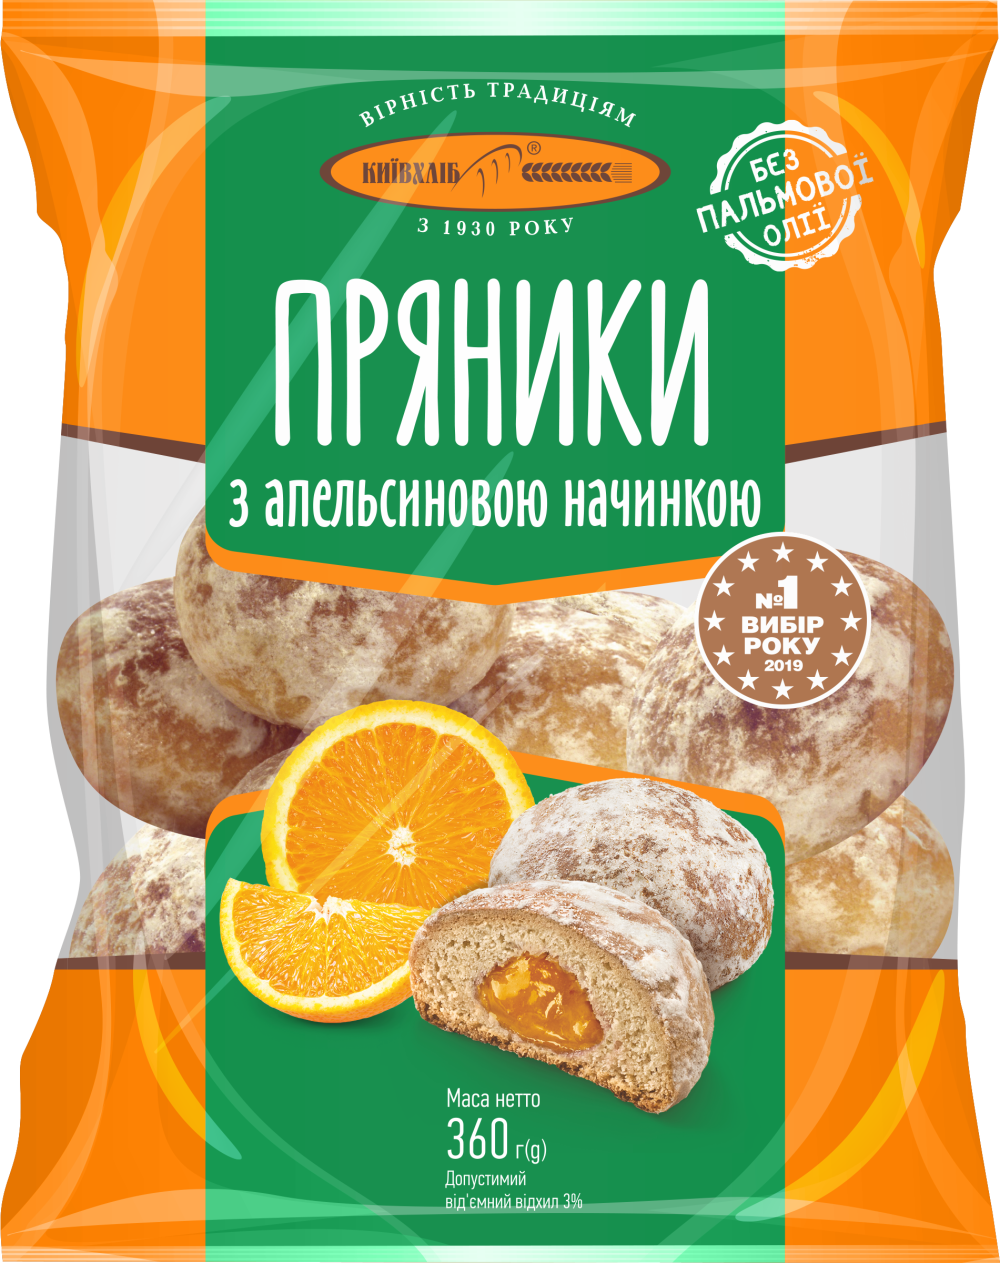 Pierniki "Owocowy Sad" z nadzeniem pomarańczowym Kyivhlib 360g